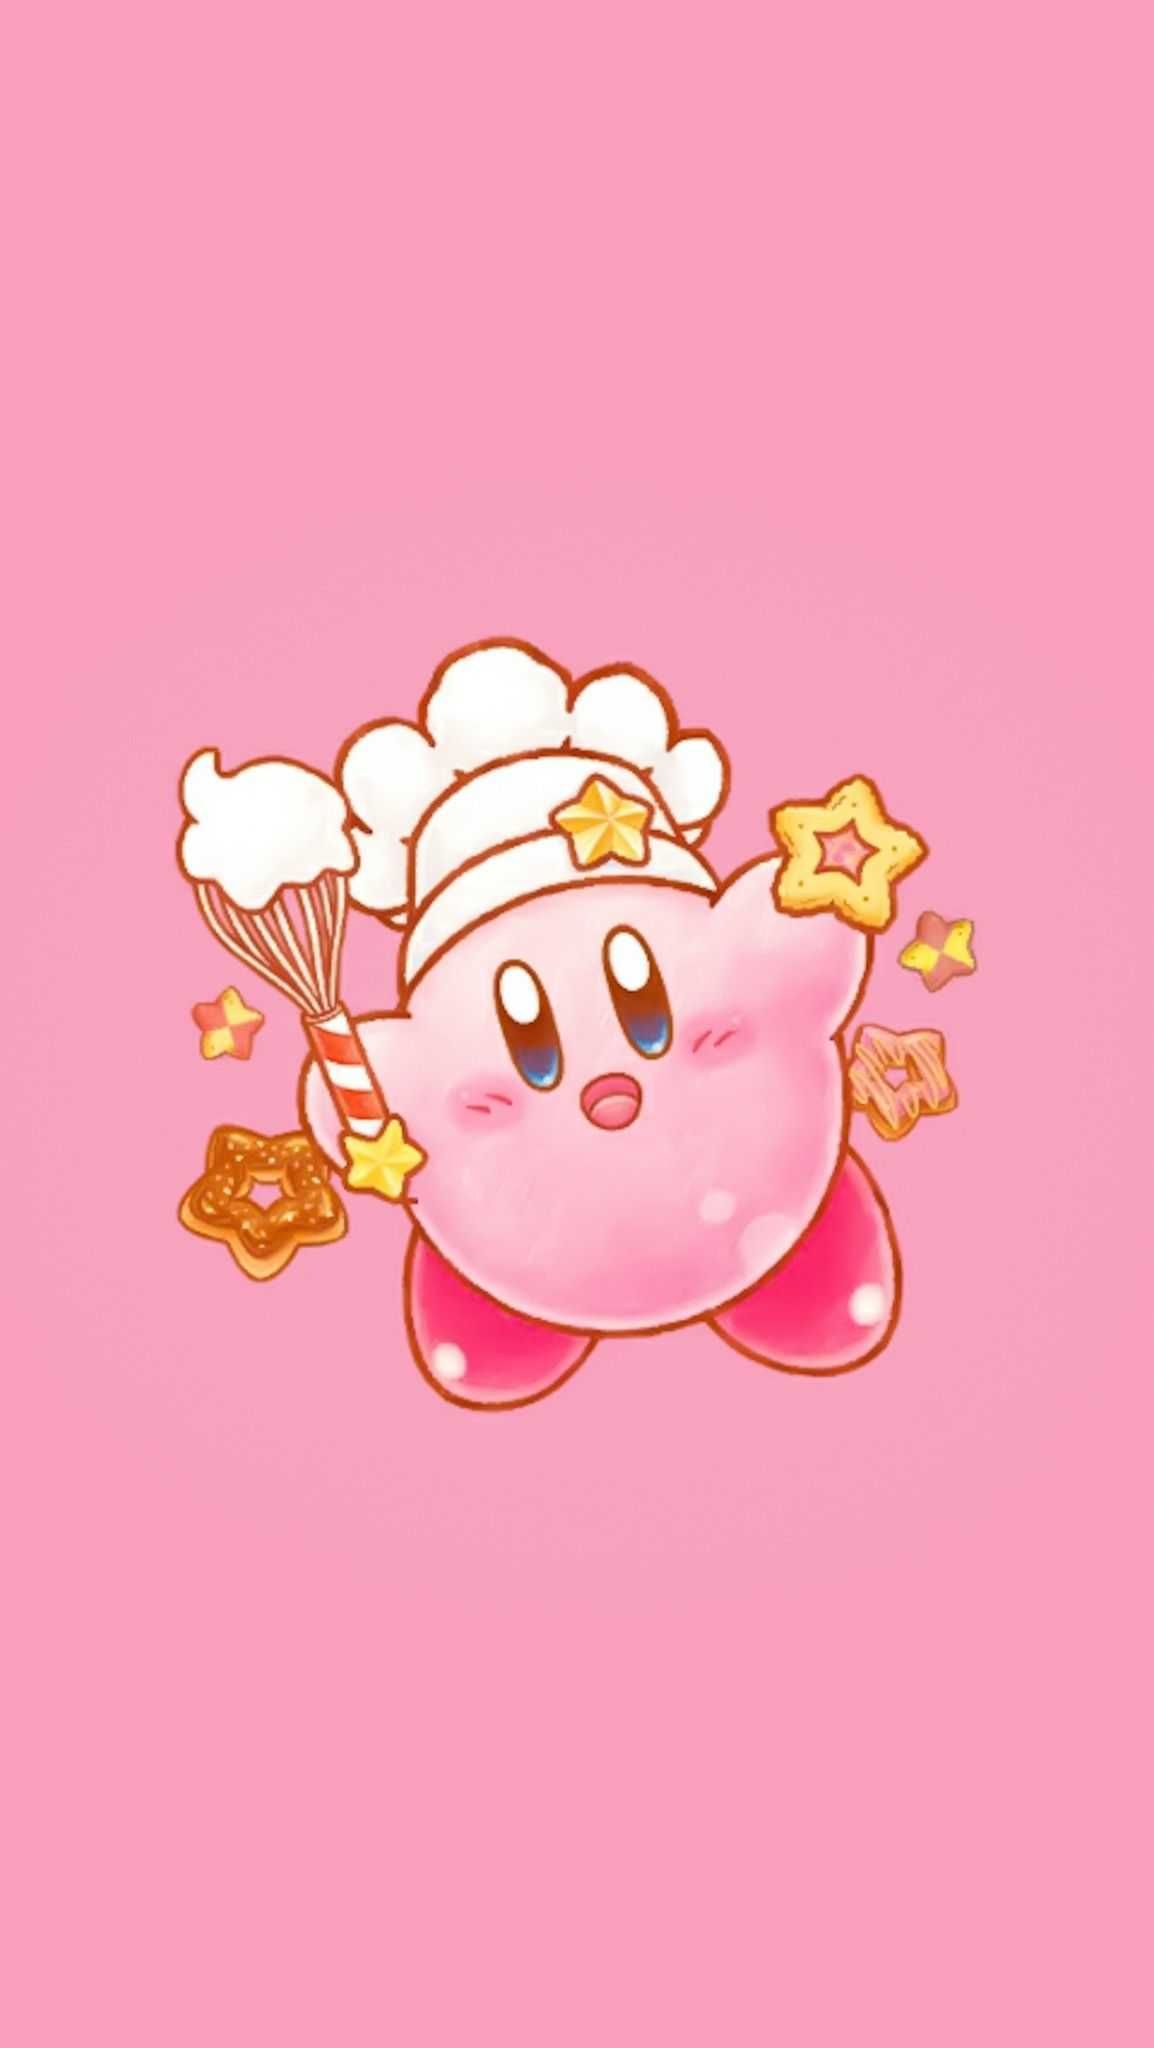 Hình nền Kirby với đôi mắt to tròn và màu sắc nổi bật, chắc chắn sẽ làm cho bạn thích thú. Xem ngay để tìm hiểu thêm về nhân vật dễ thương này nhé!